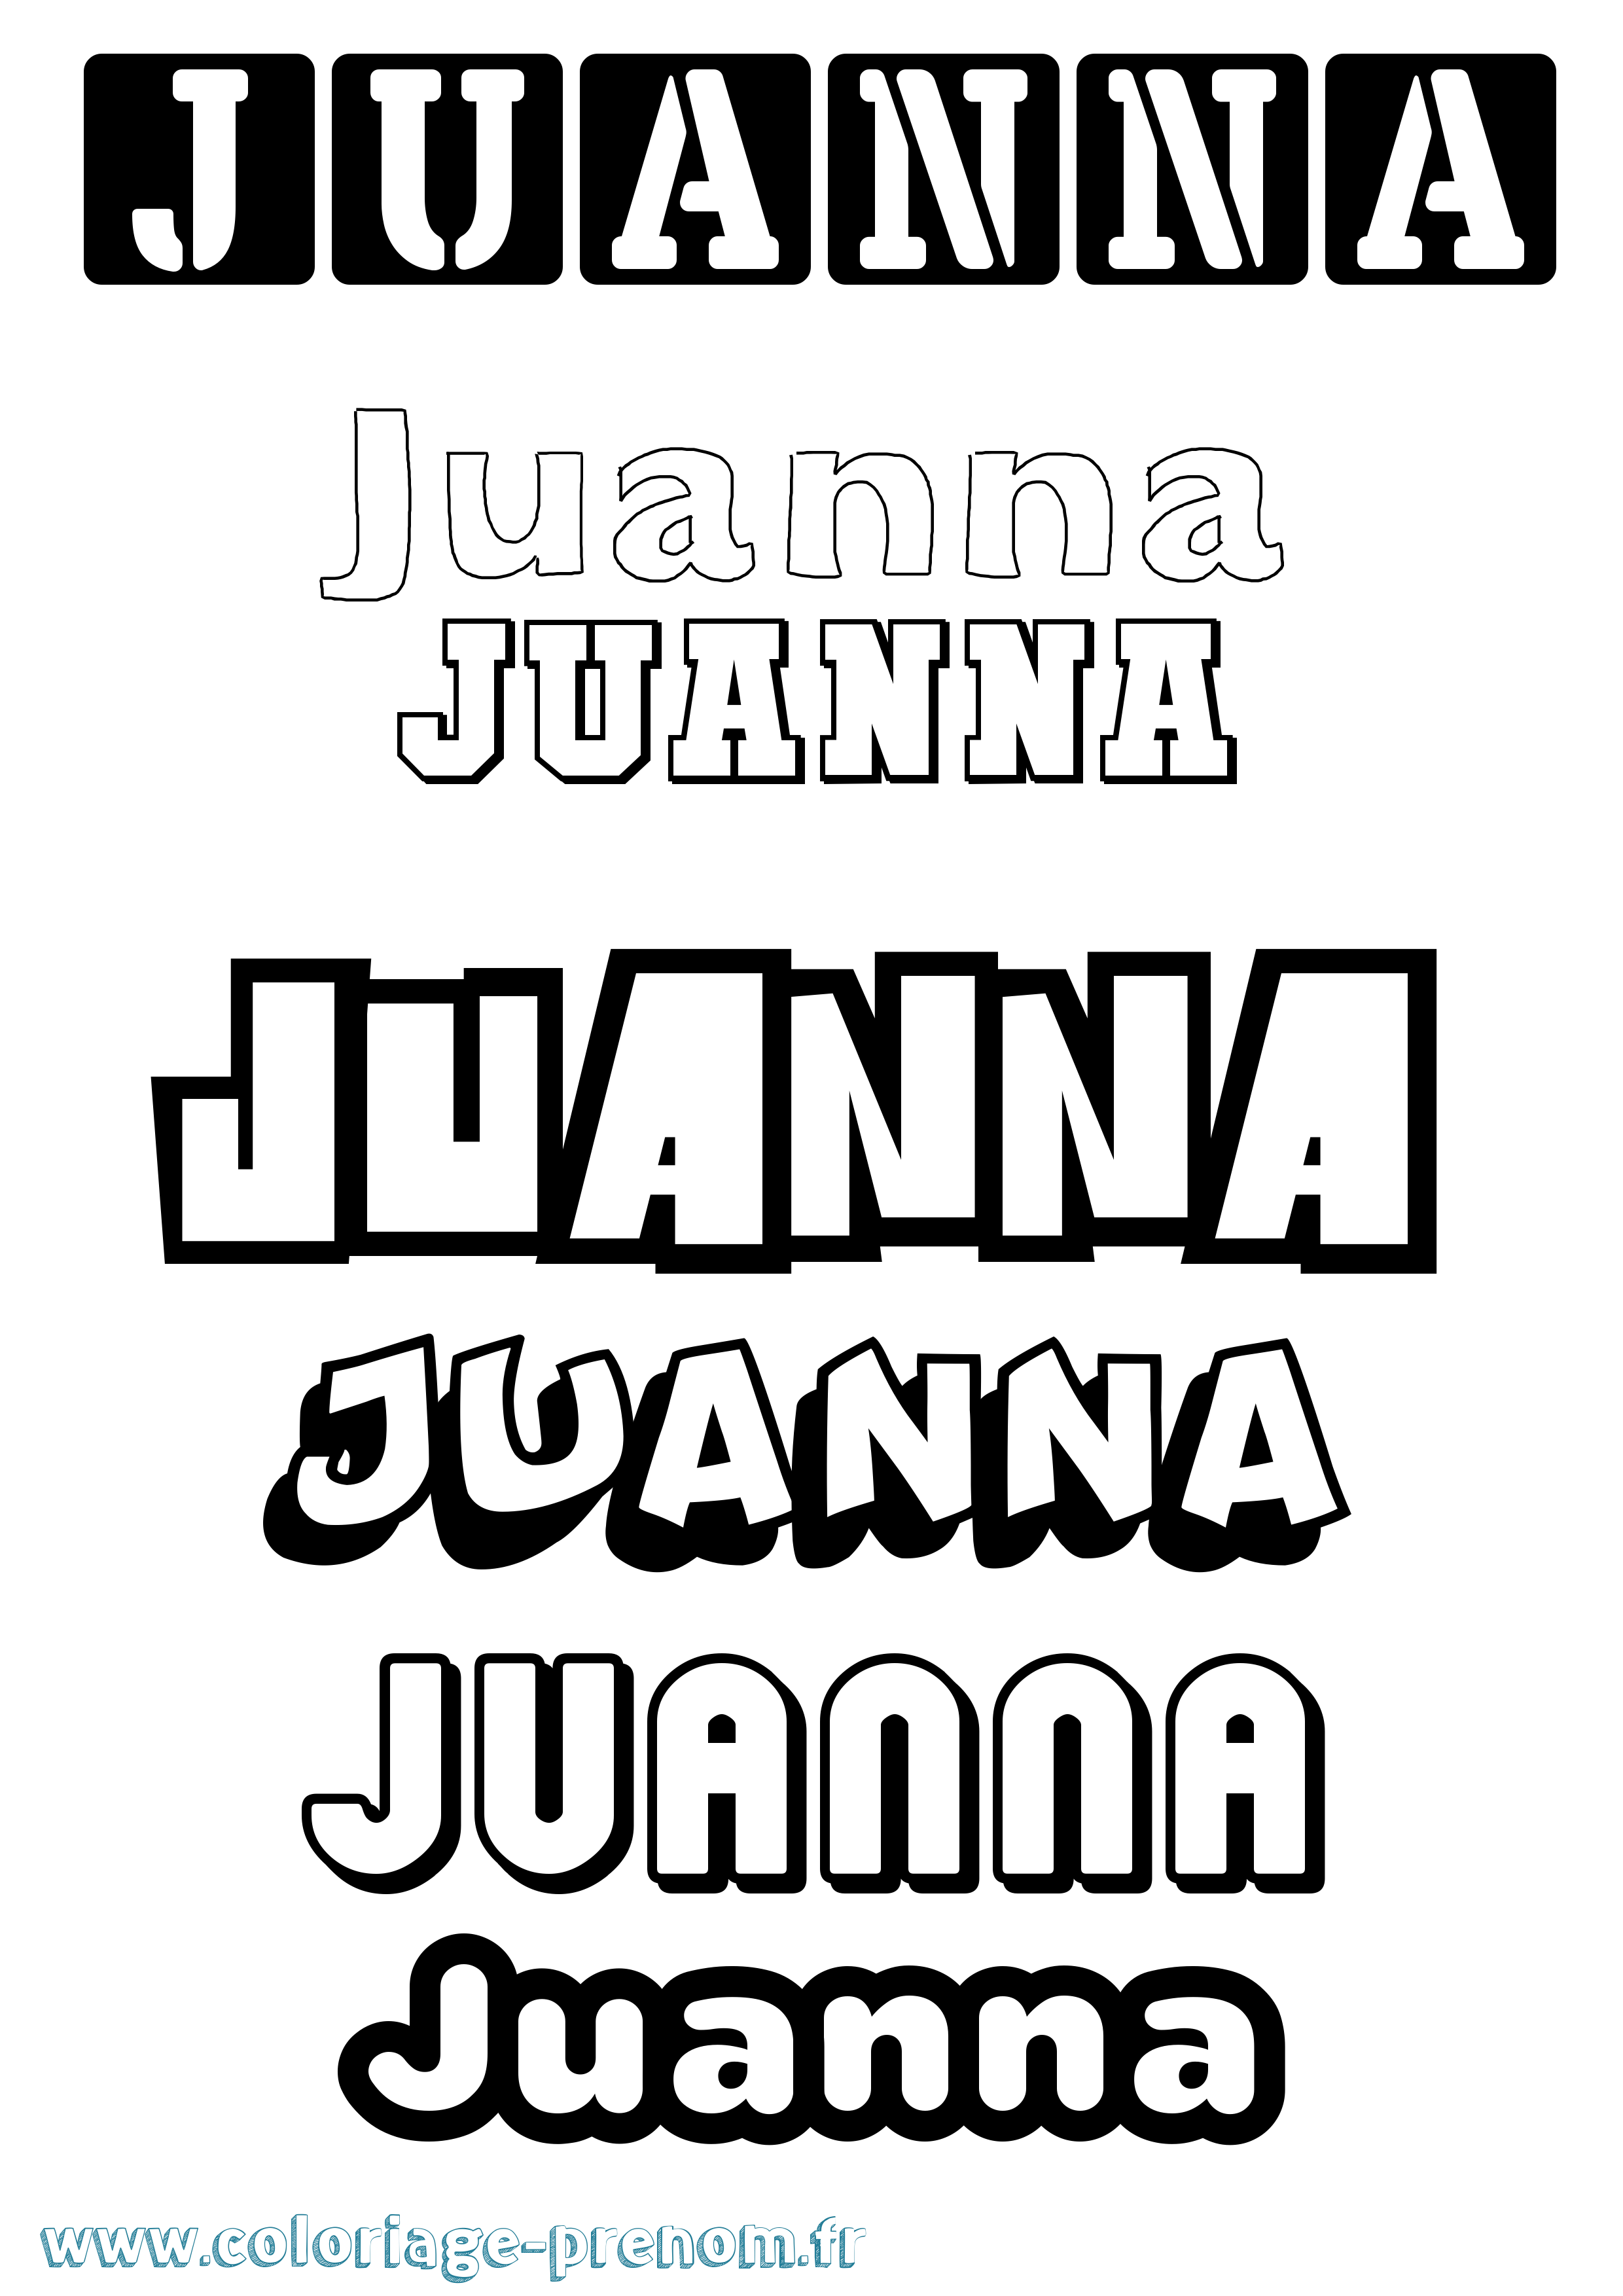 Coloriage prénom Juanna Simple